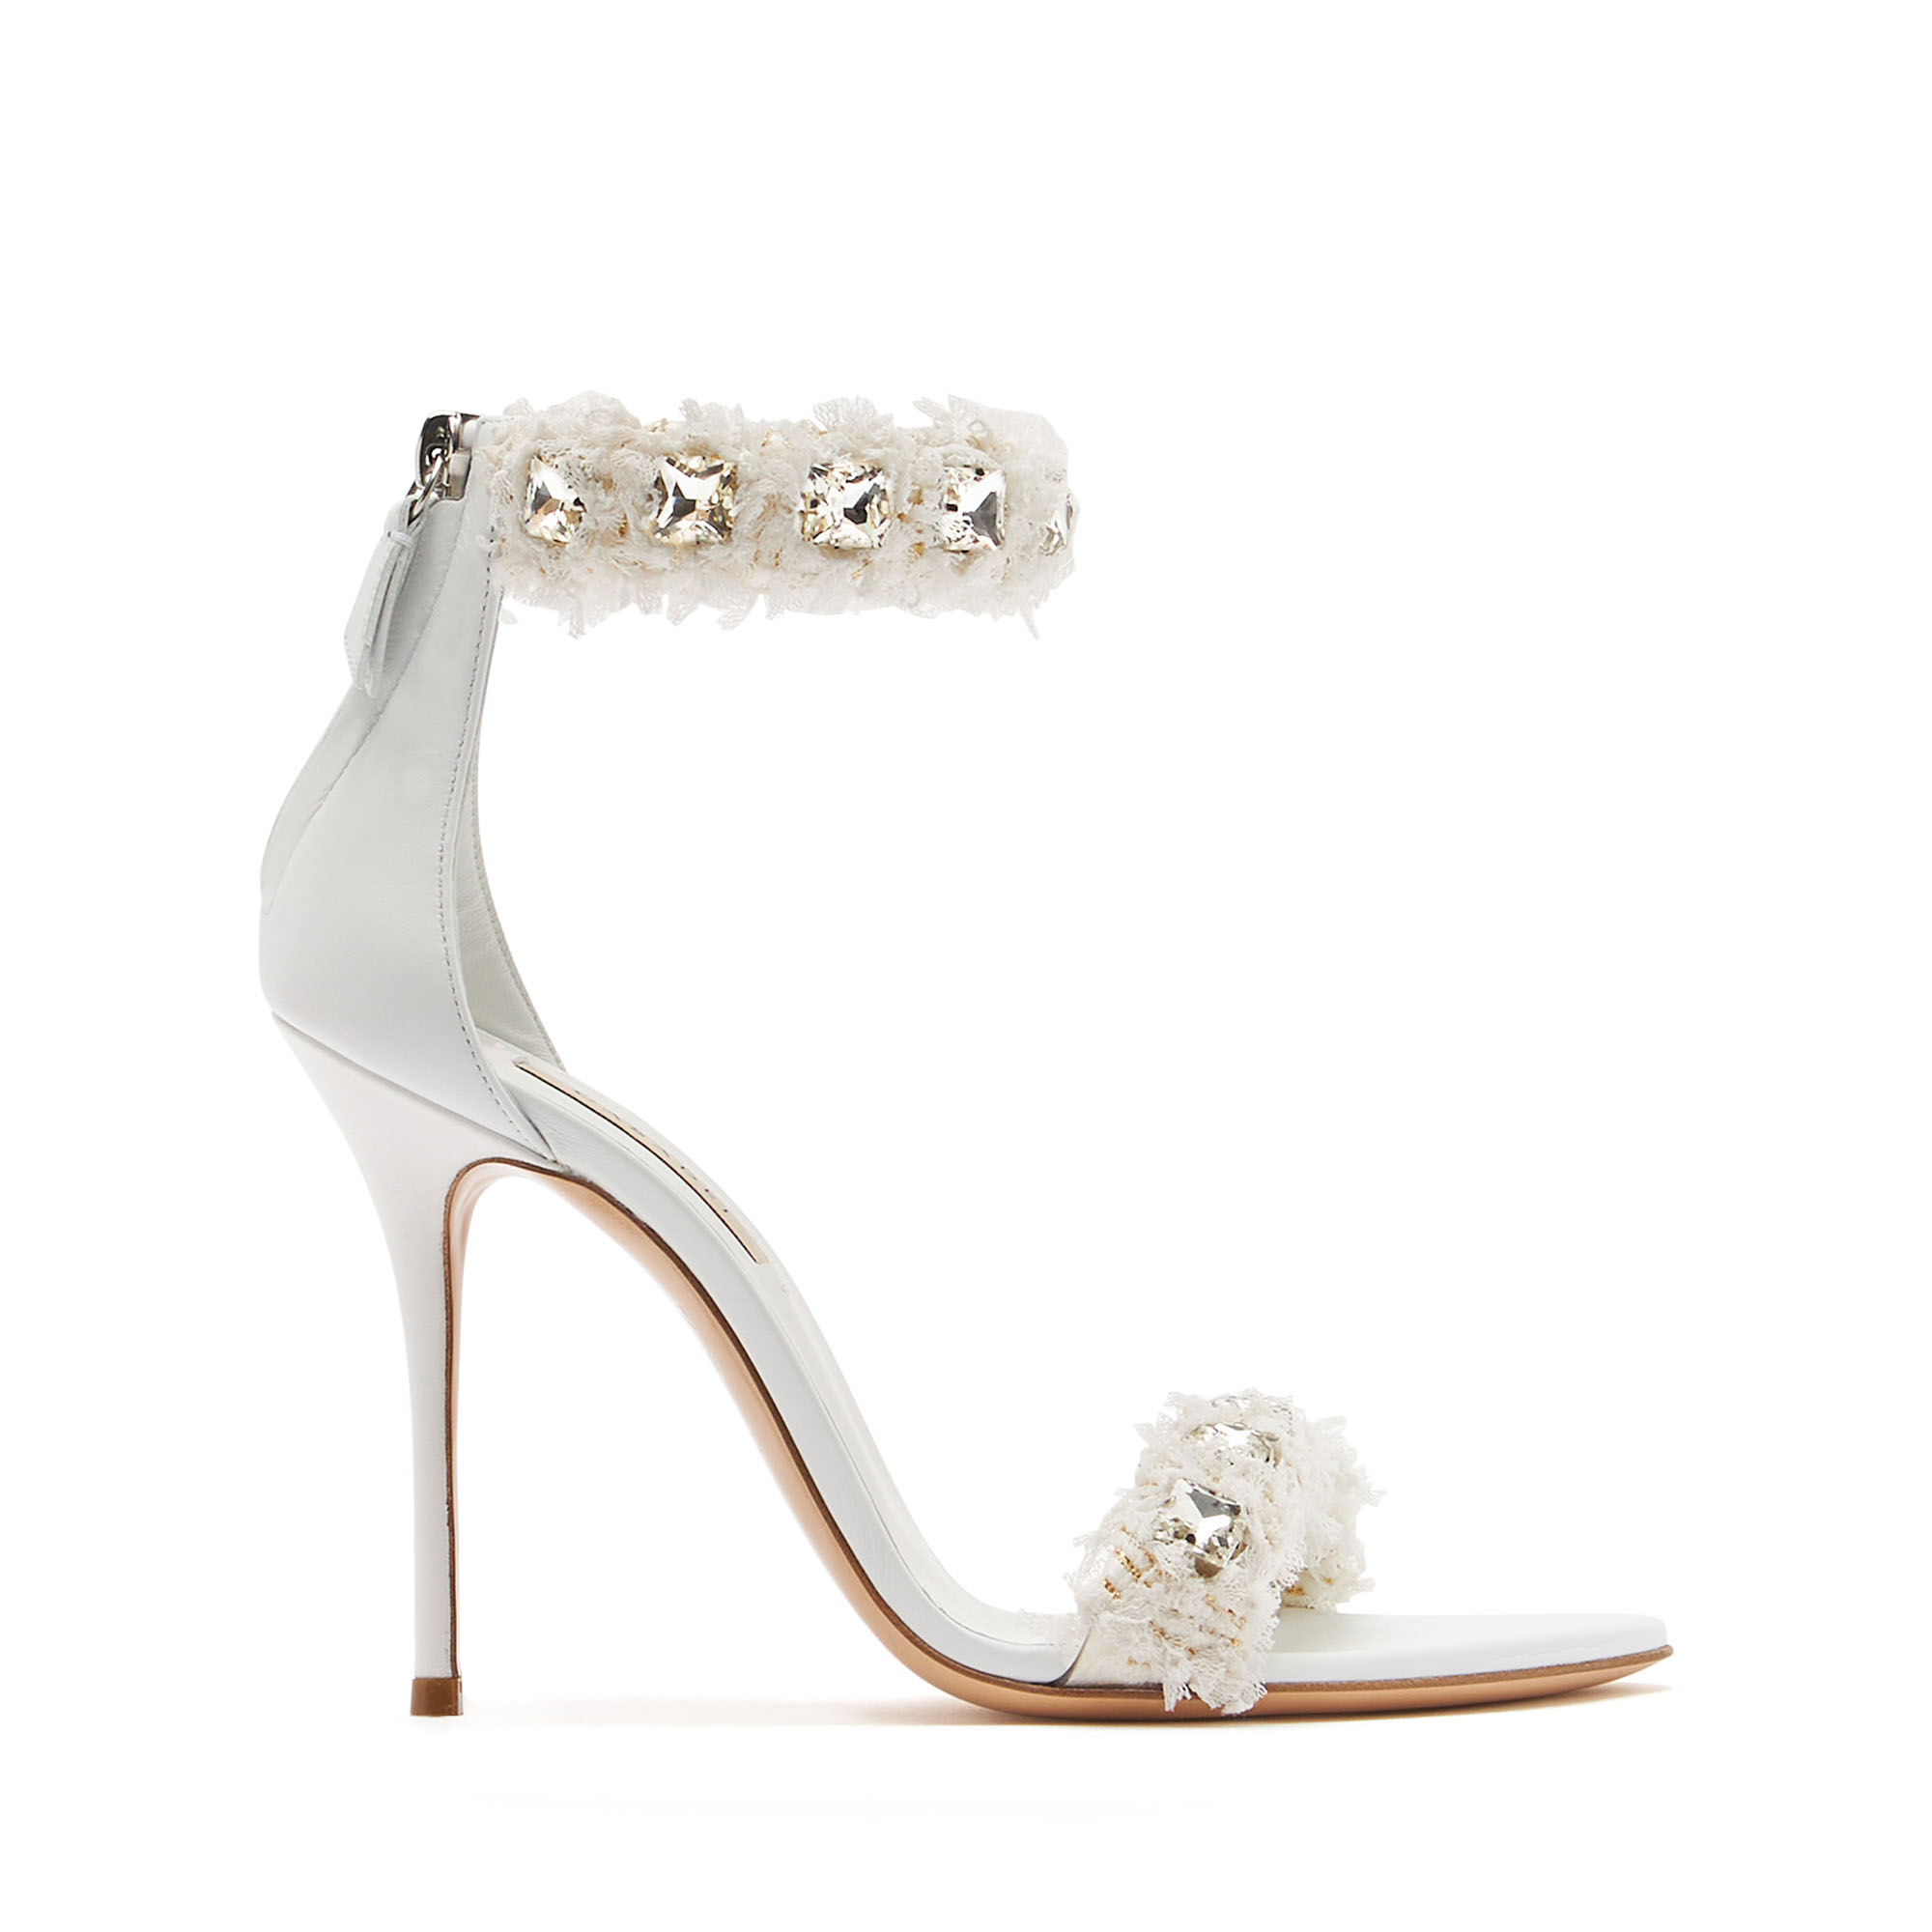 Shop Casadei Elsa Leather Sandals - Woman Sandals White 40